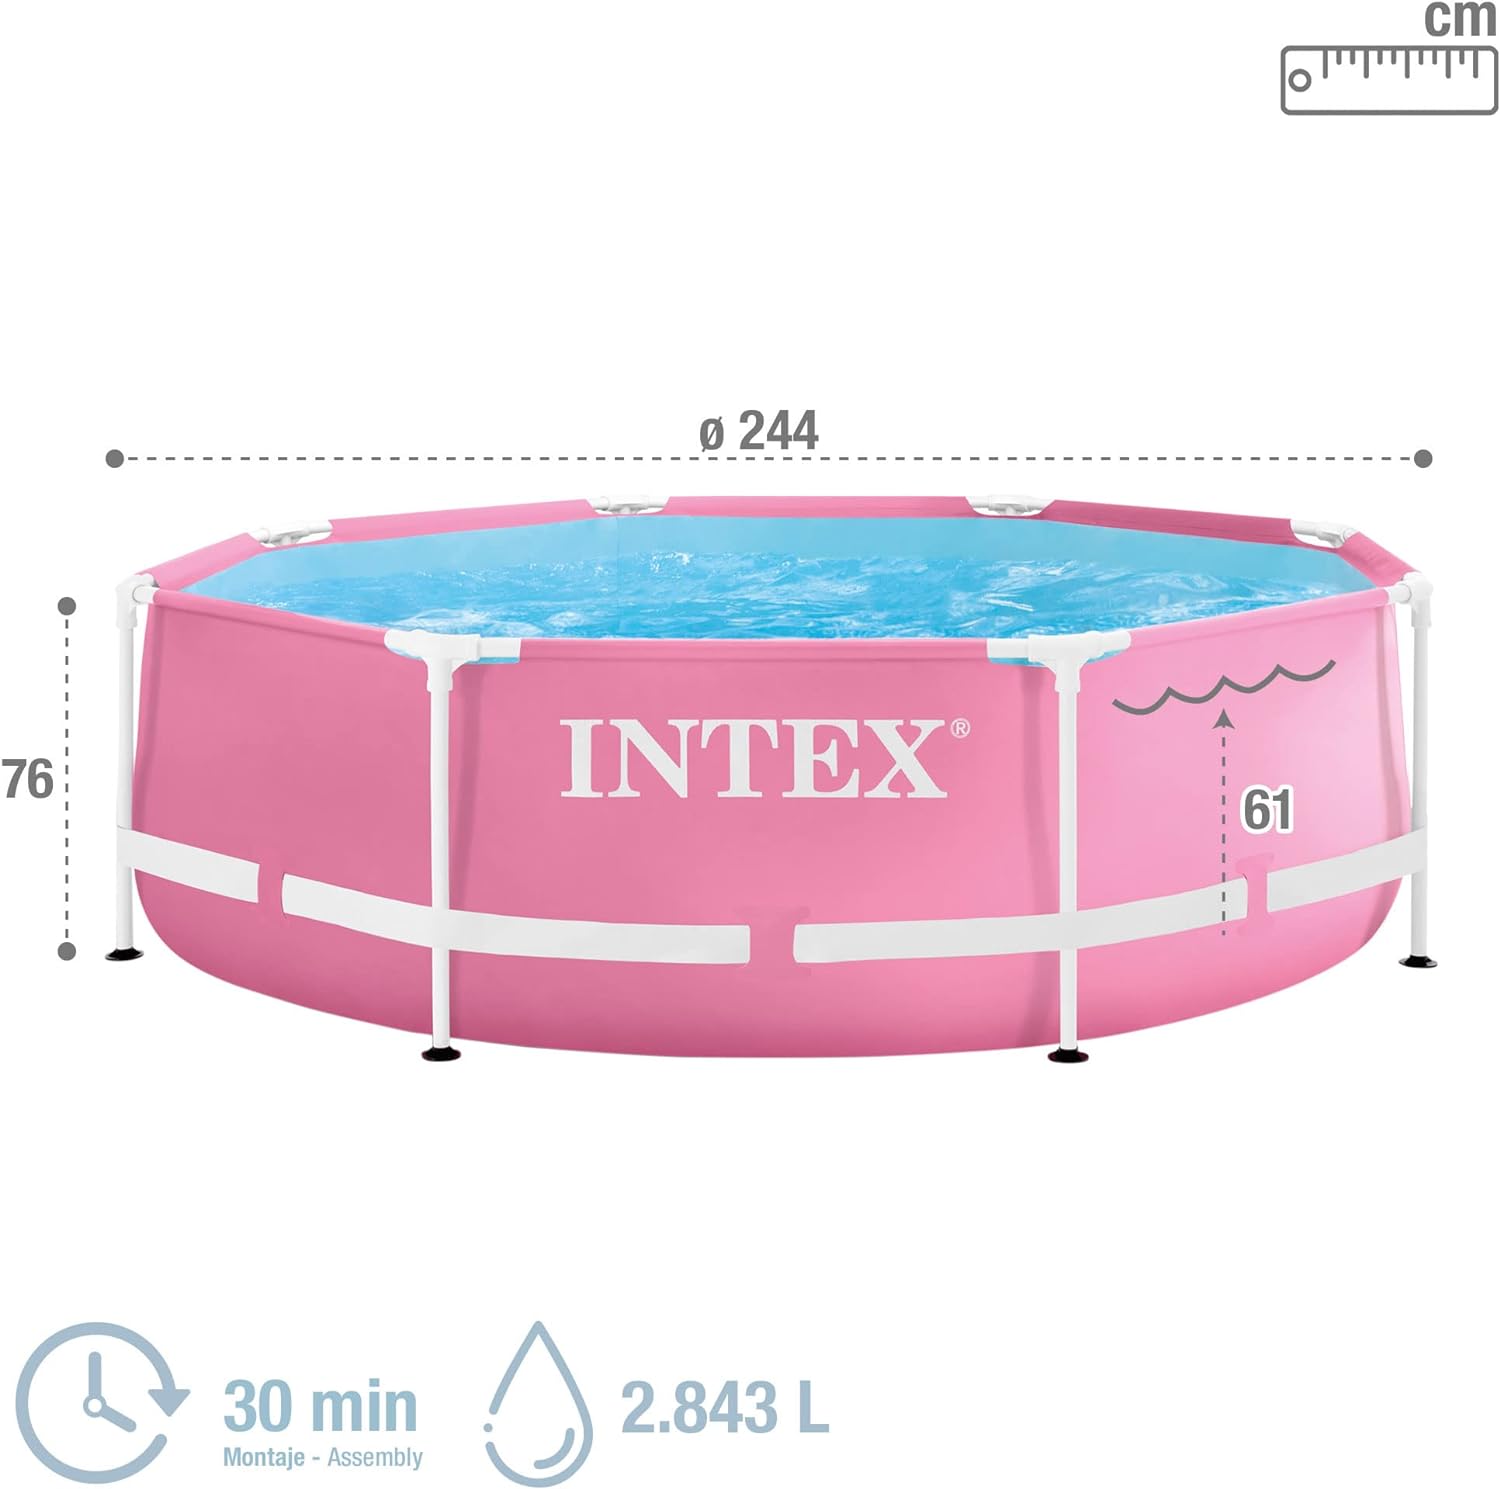 Intex Pink Metal Frame Pool 244x76cm - Poolpirat